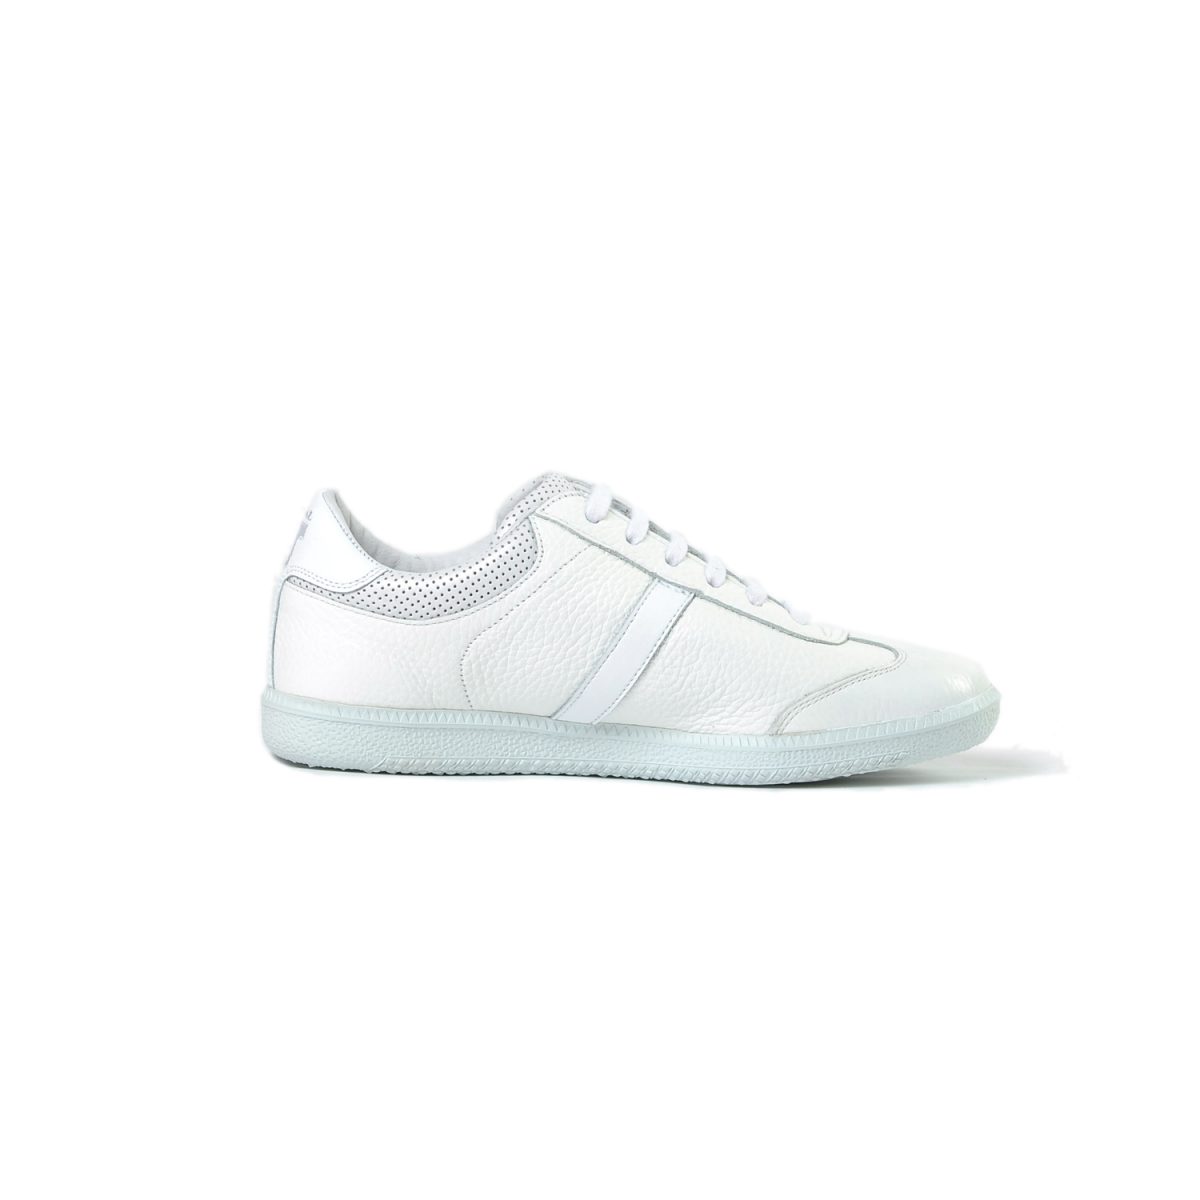 Tisza shoes - Compakt - White